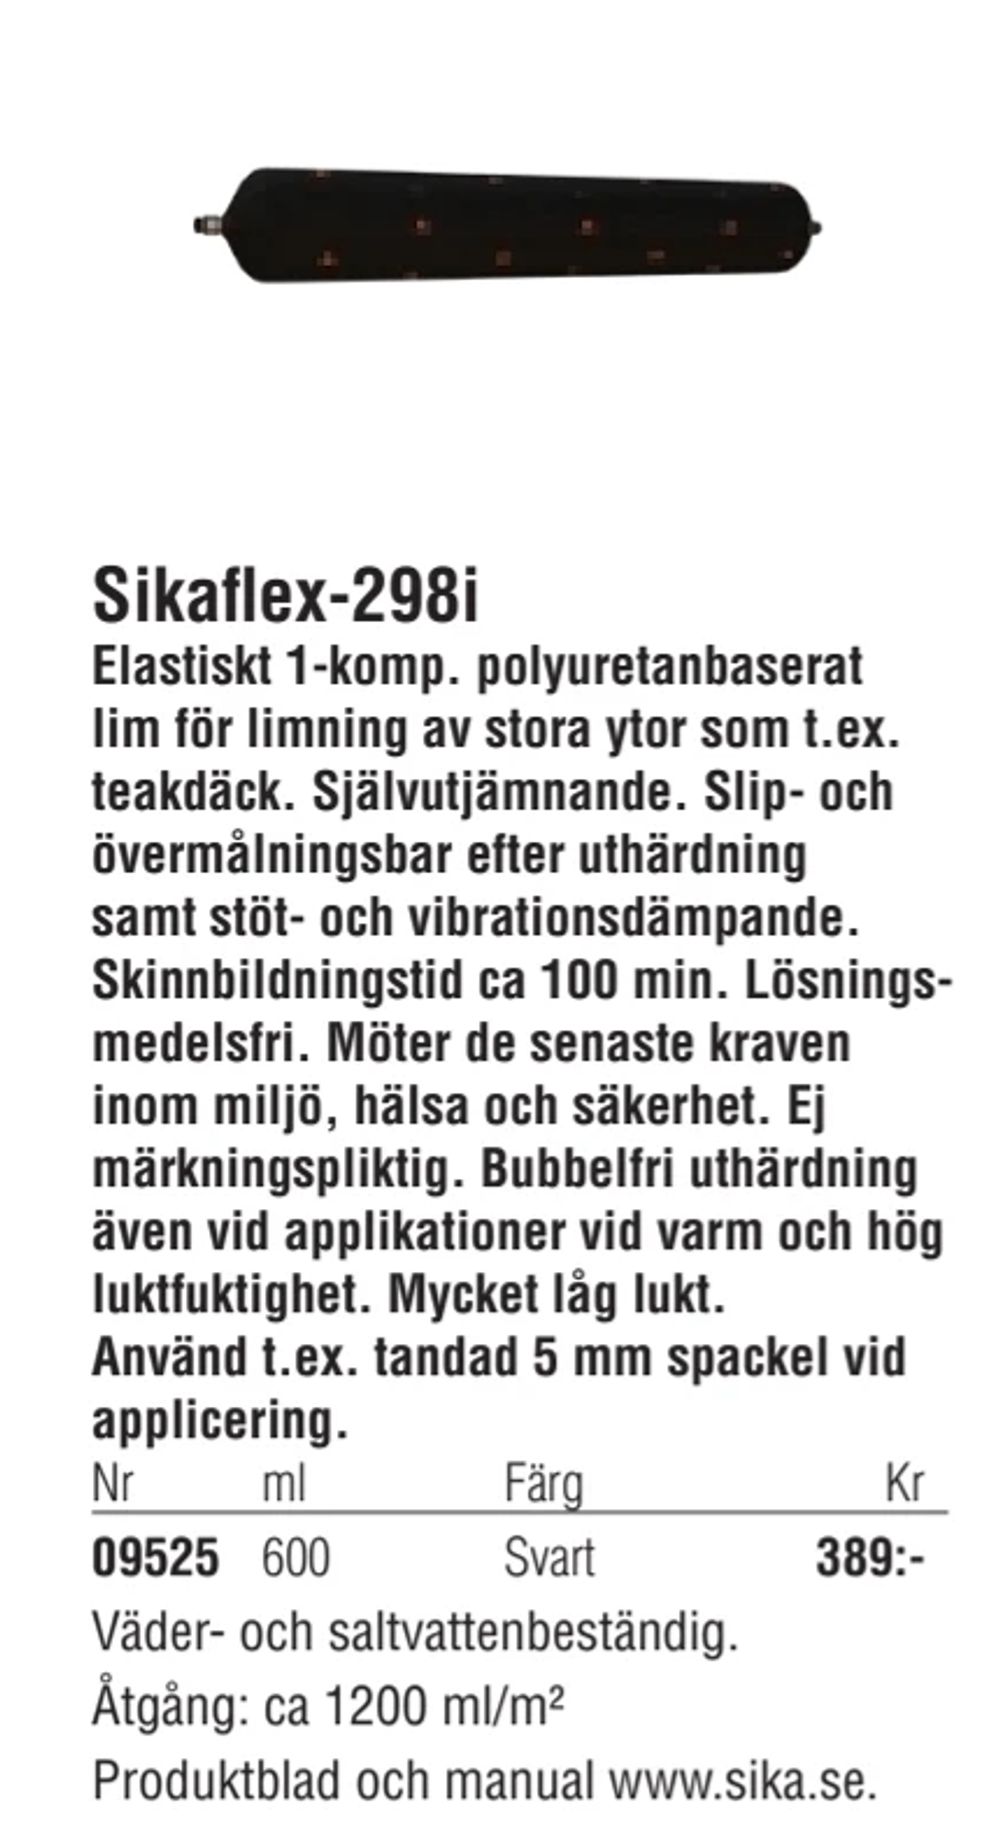 Erbjudanden på Sikaflex-298i från Erlandsons Brygga för 389 kr